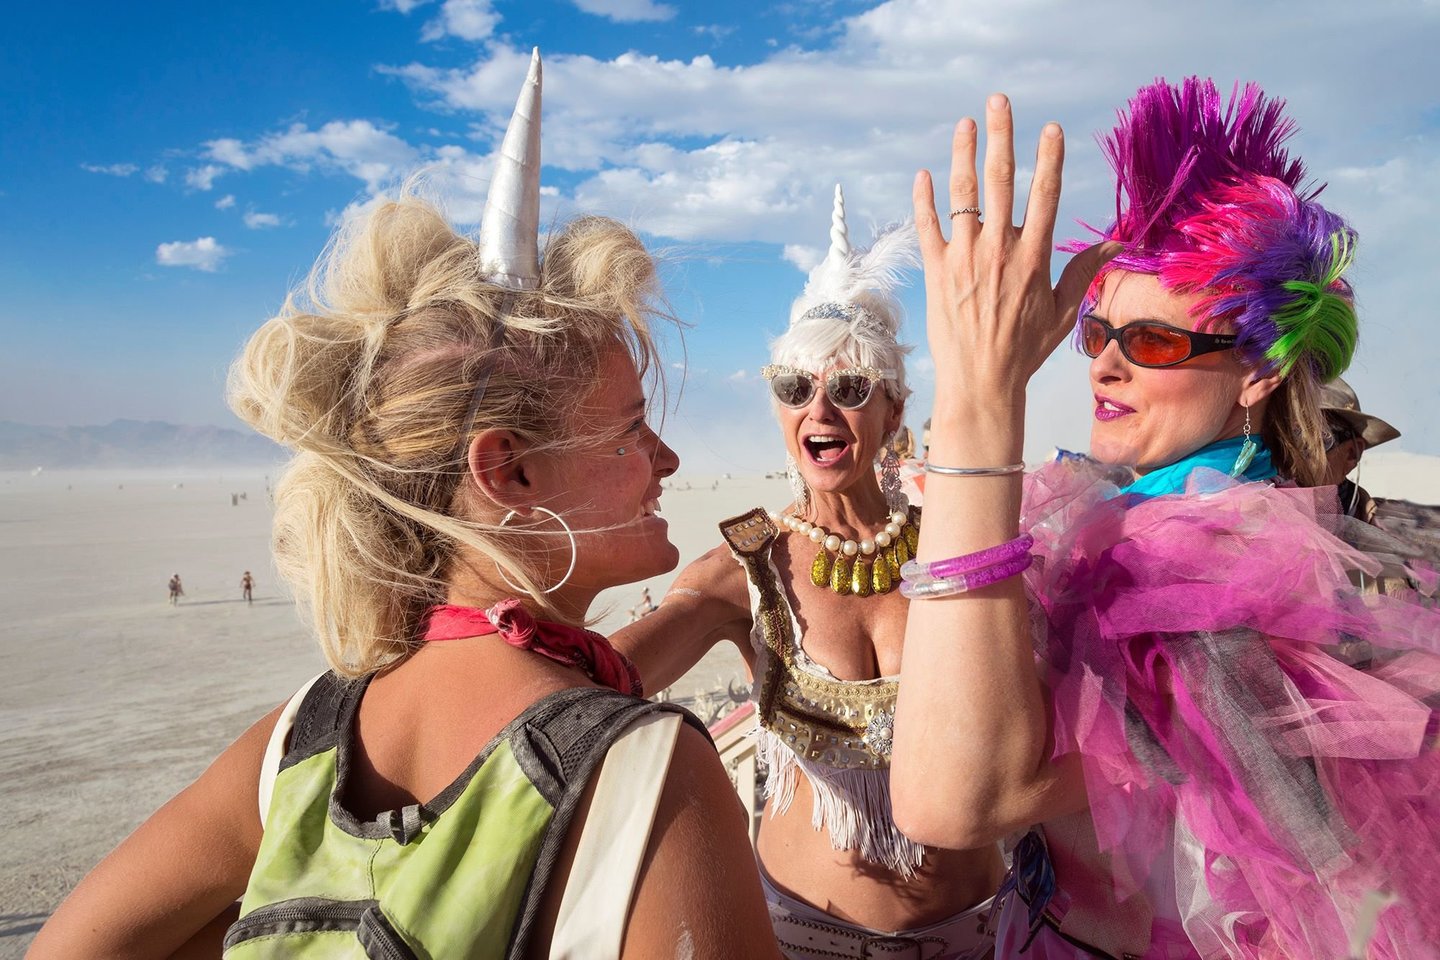 Romualdo Požerskio įamžintos garsiojo festivalio „Degantis žmogus“ („Burning Man“) akimirkos.